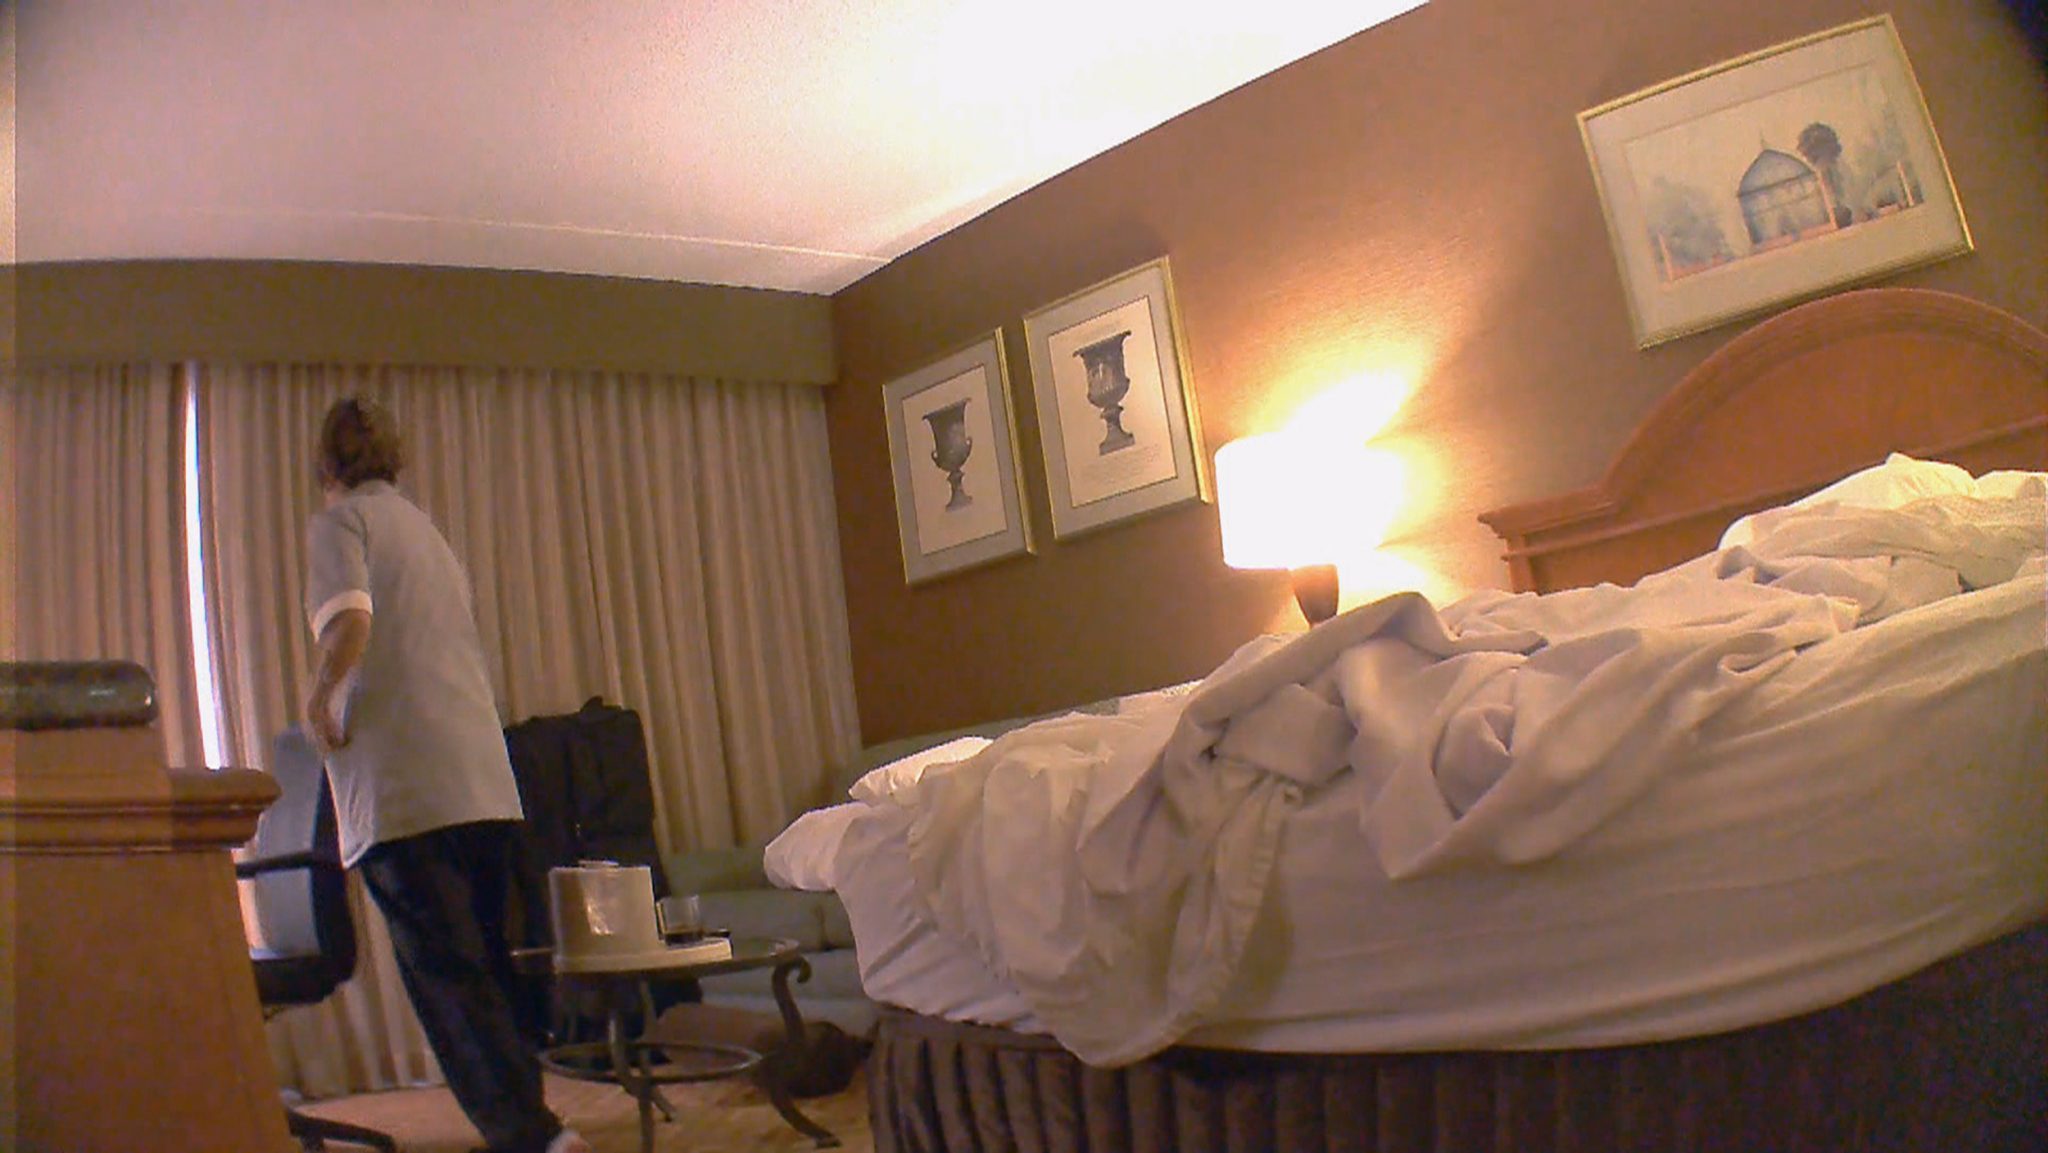 Негр трахает подругу на кровати не подозревая о скрытой камере